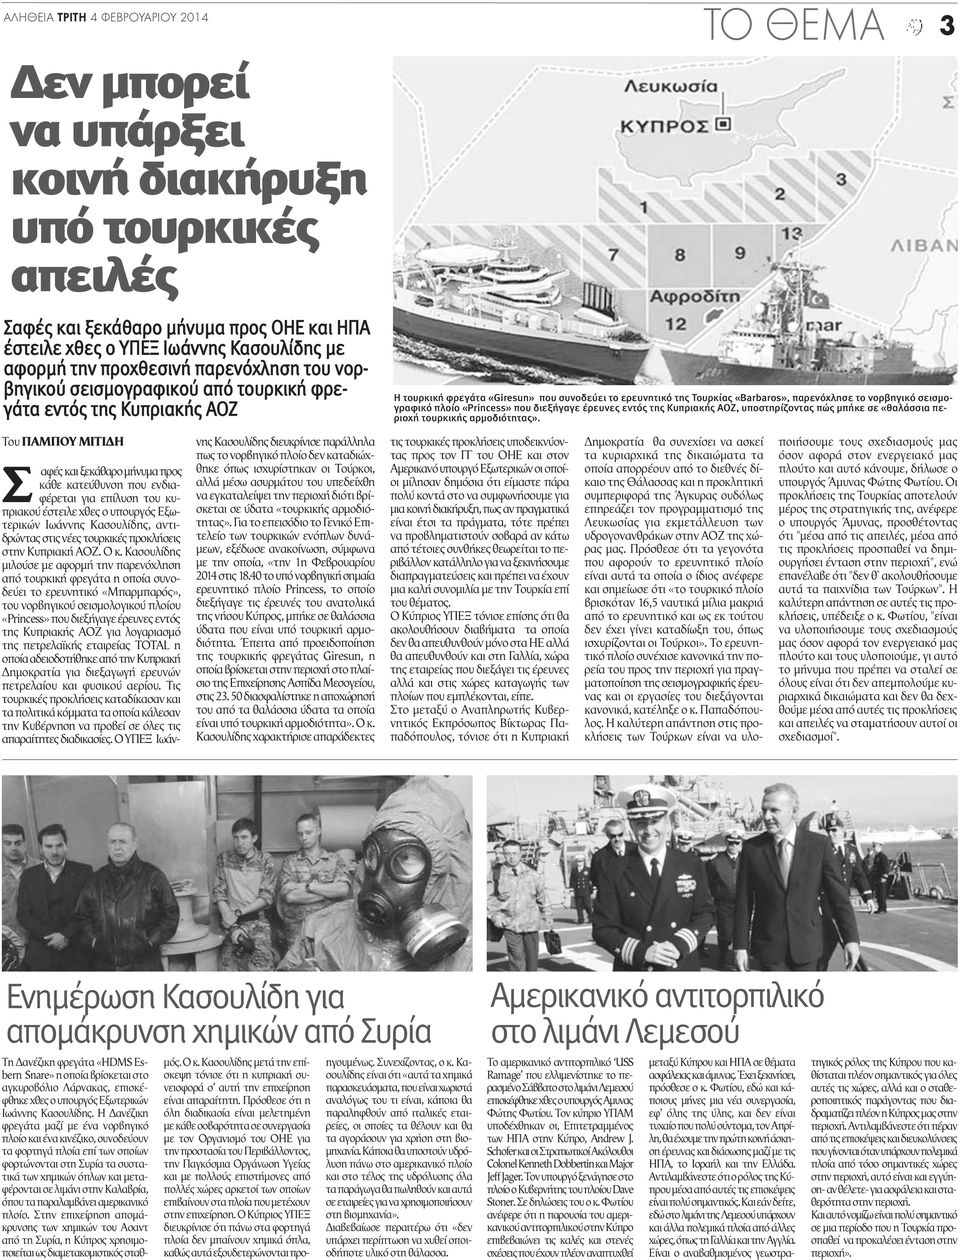 νορβηγικό σεισμογραφικό πλοίο «Princess» που διεξήγαγε έρευνες εντός της Κυπριακής ΑΟΖ, υποστηρίζοντας πώς μπήκε σε «θαλάσσια περιοχή τουρκικής αρμοδιότητας».